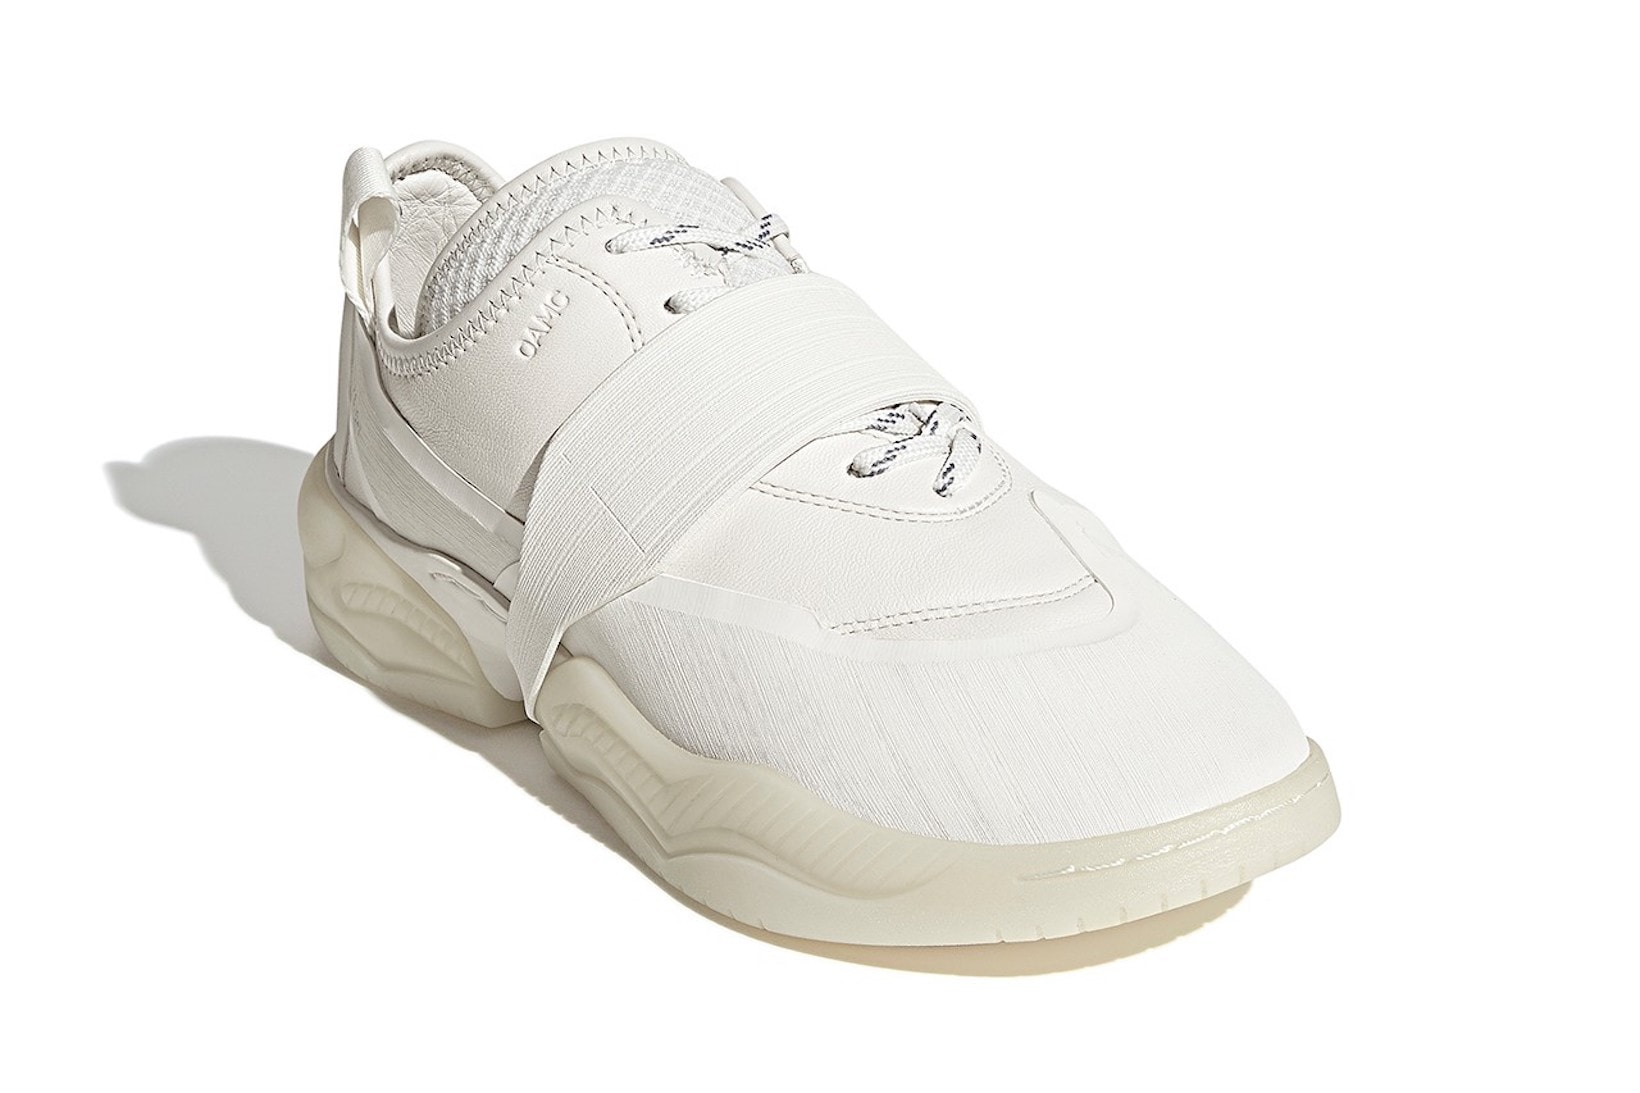 adidas originals oamc type 01 sneakers off white pink green release date footwear shoes sneakerhead Luke Meier